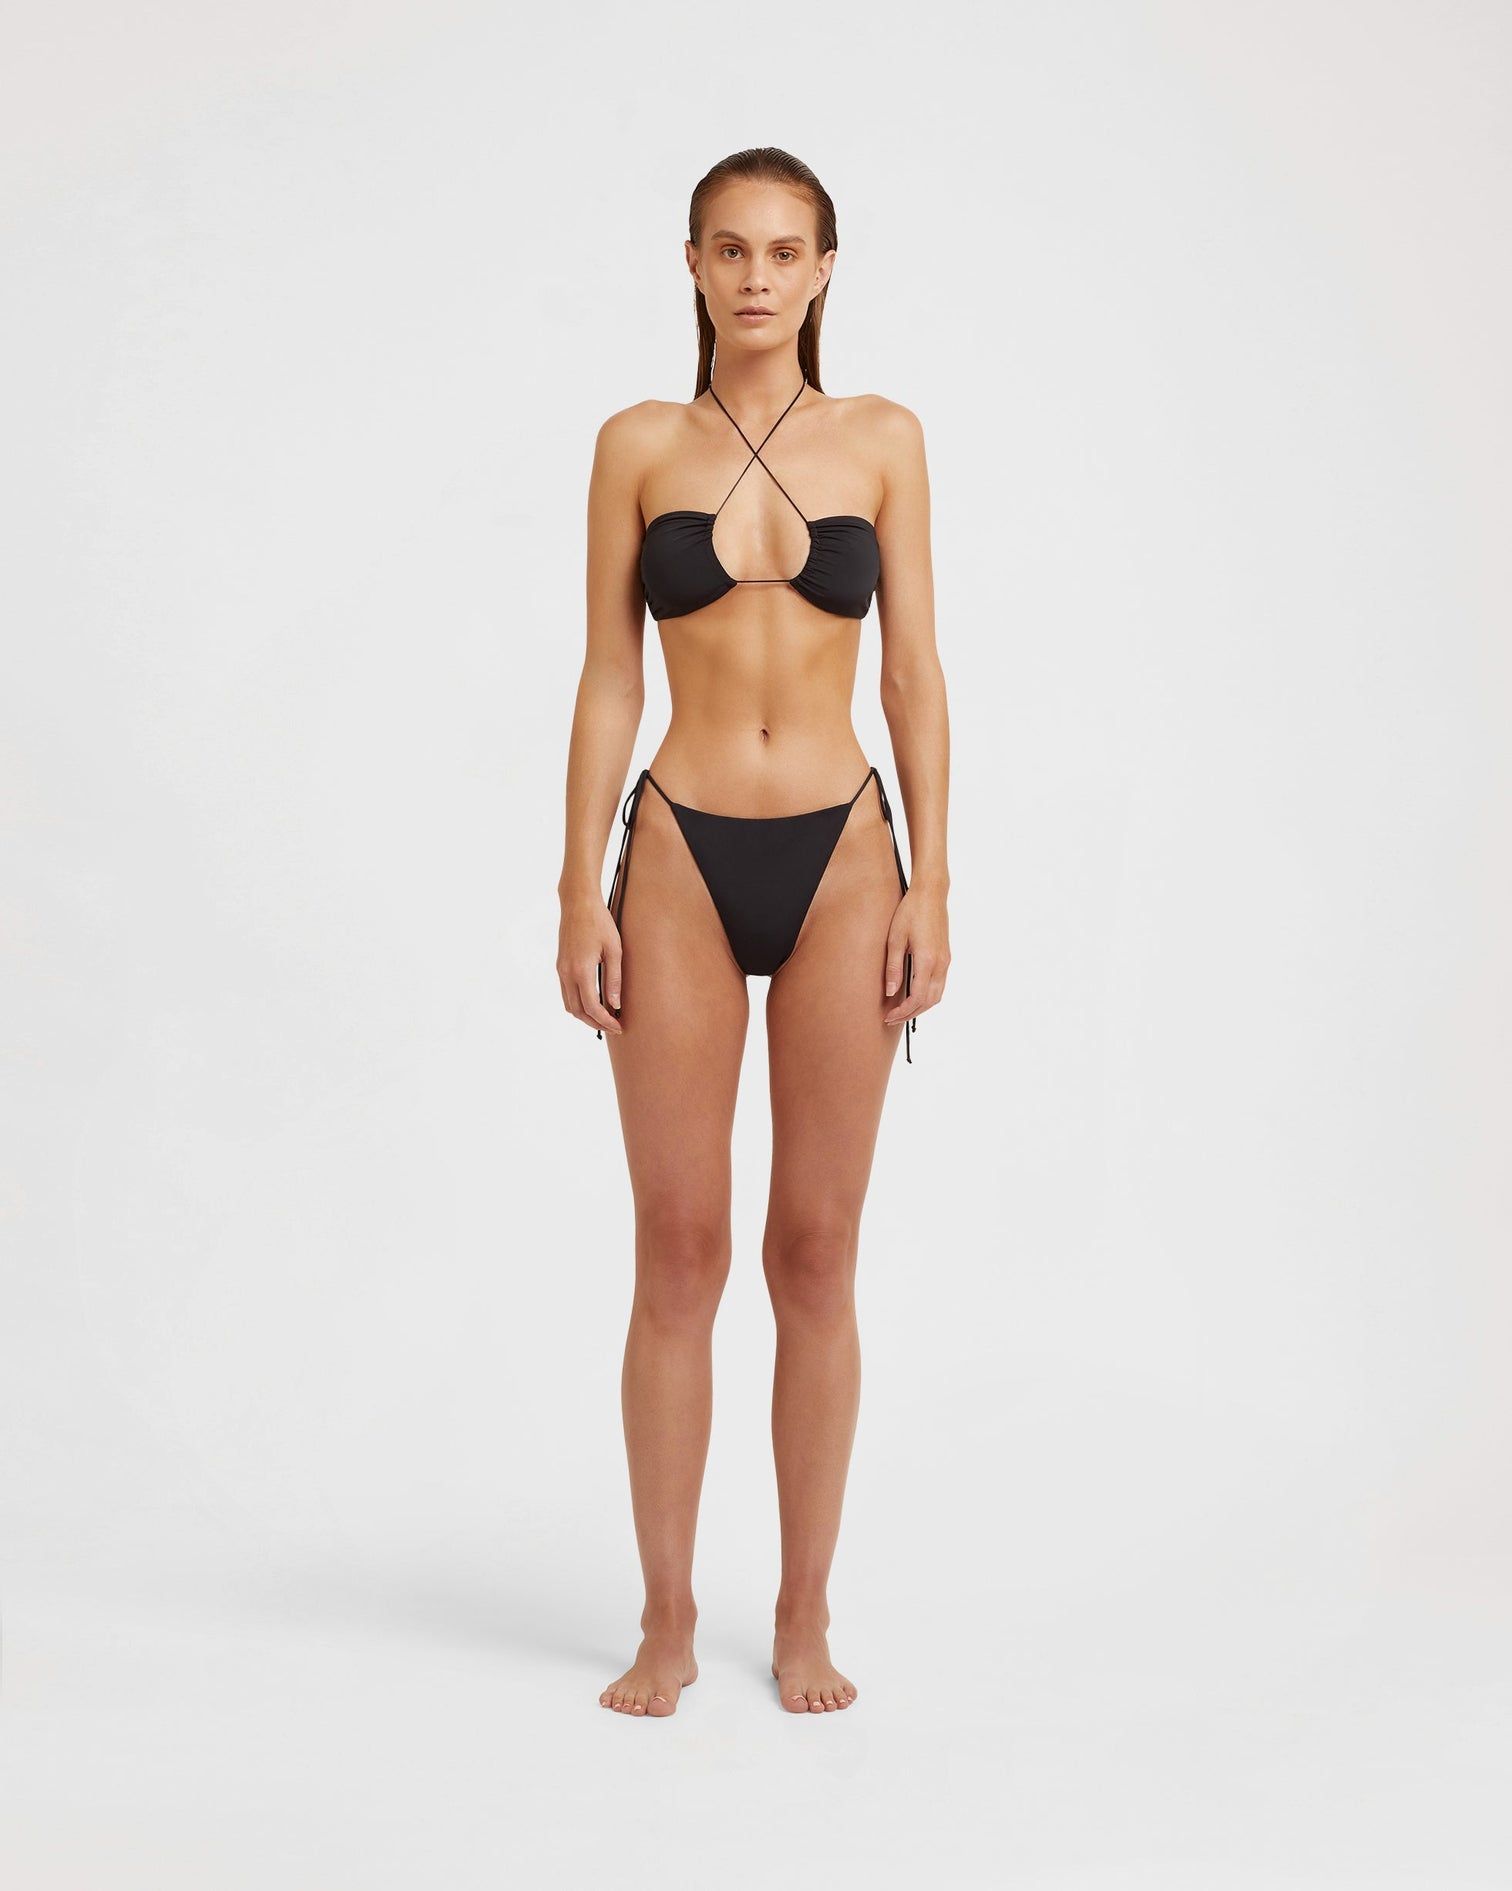 Bikini Set Two Piece 1512 M-L-XL-XXL Swimwear 2 Piece Set Womens Plus Size Bikini